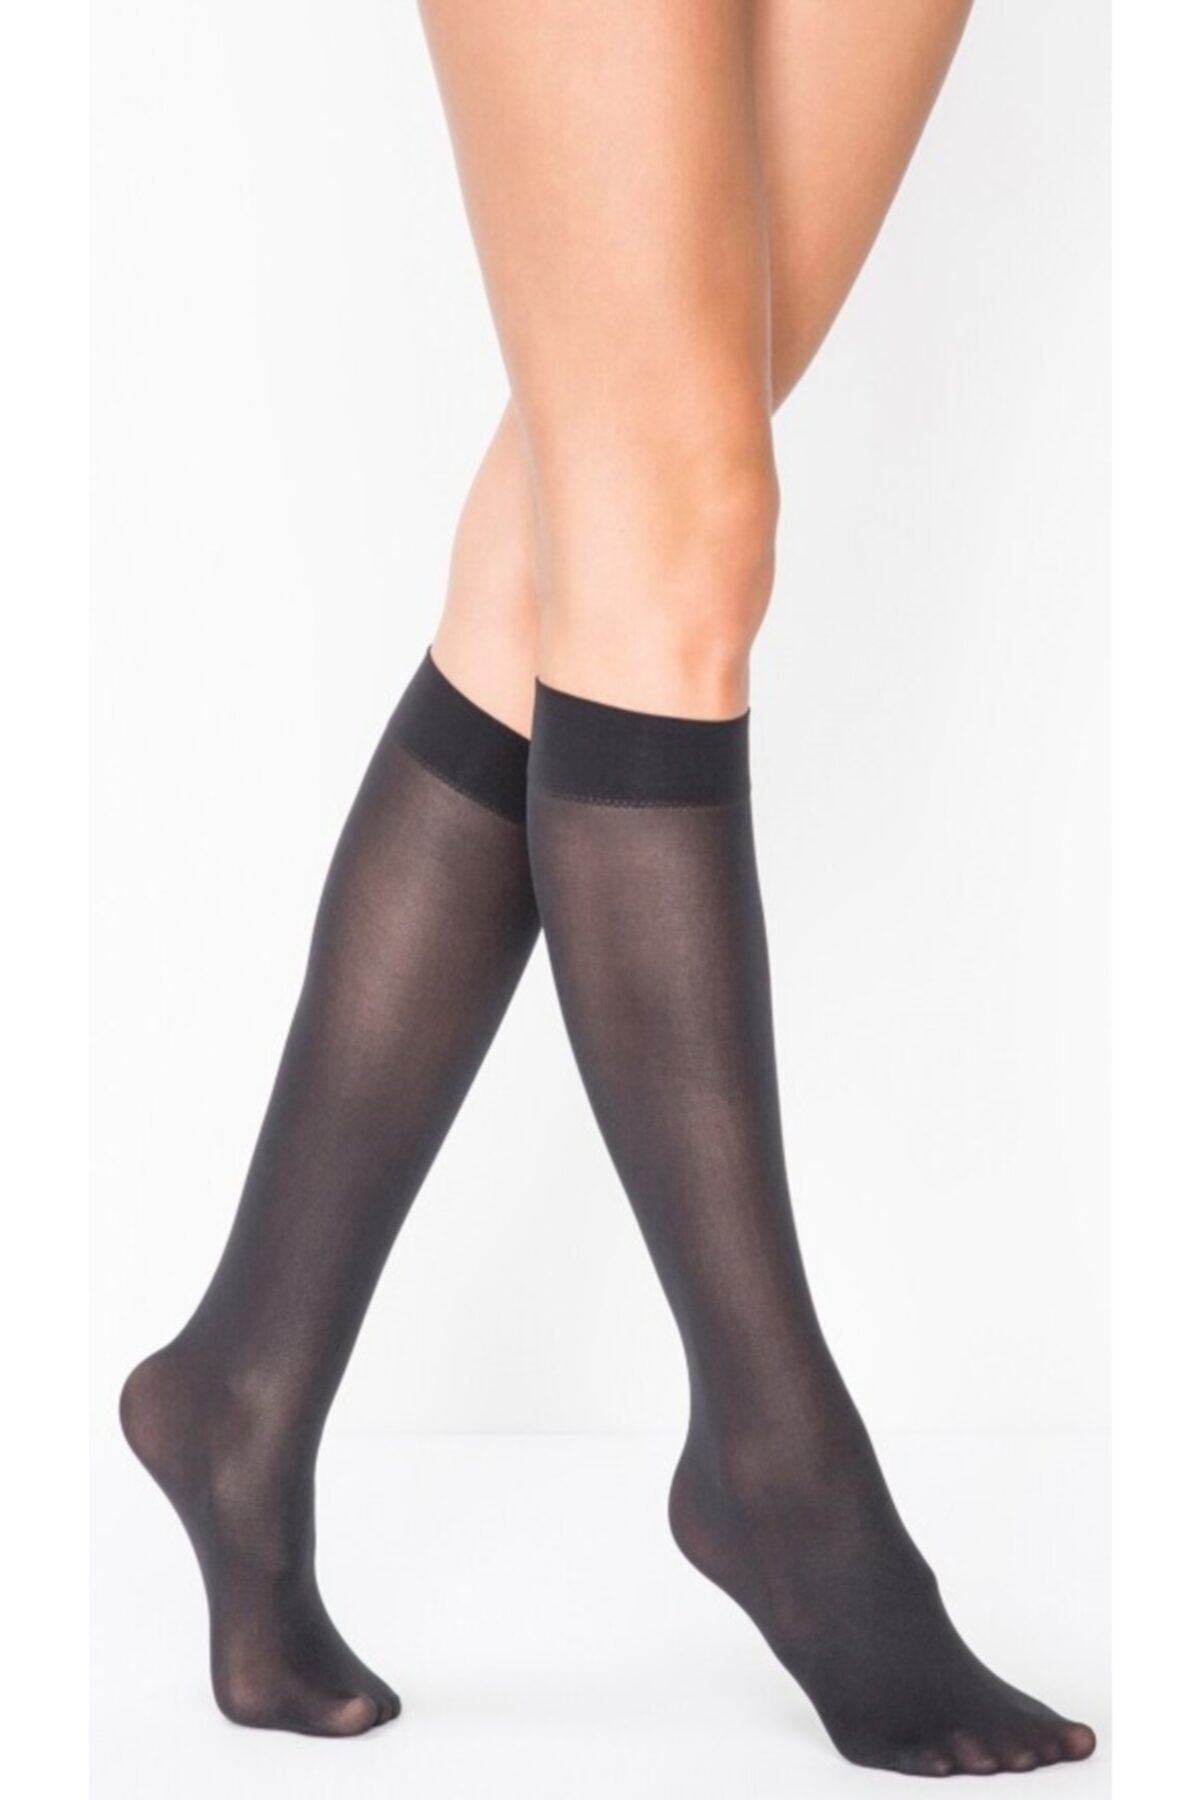 Penti Kadın Siyah Mikro 40 Pantolon Çorabı 3'lü